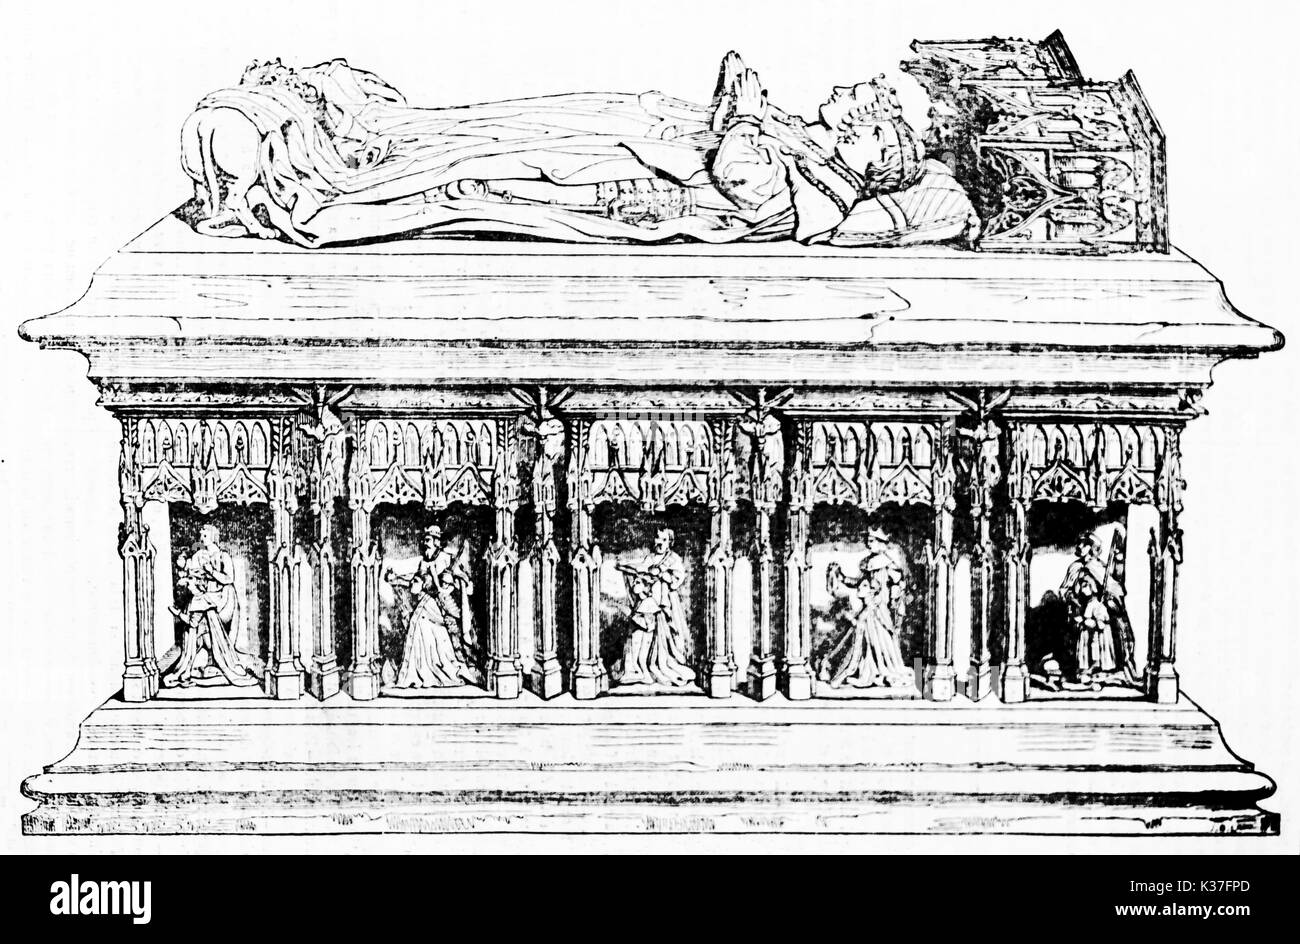 Majestic Stein monumentale Grab des Gisants von Charles I und Agnés de Bourgogne in Priorei von Kirche in Frankreich. Alte Illustration von unbekannter Autor auf Magasin Pittoresque Paris 1834 veröffentlicht. Stockfoto